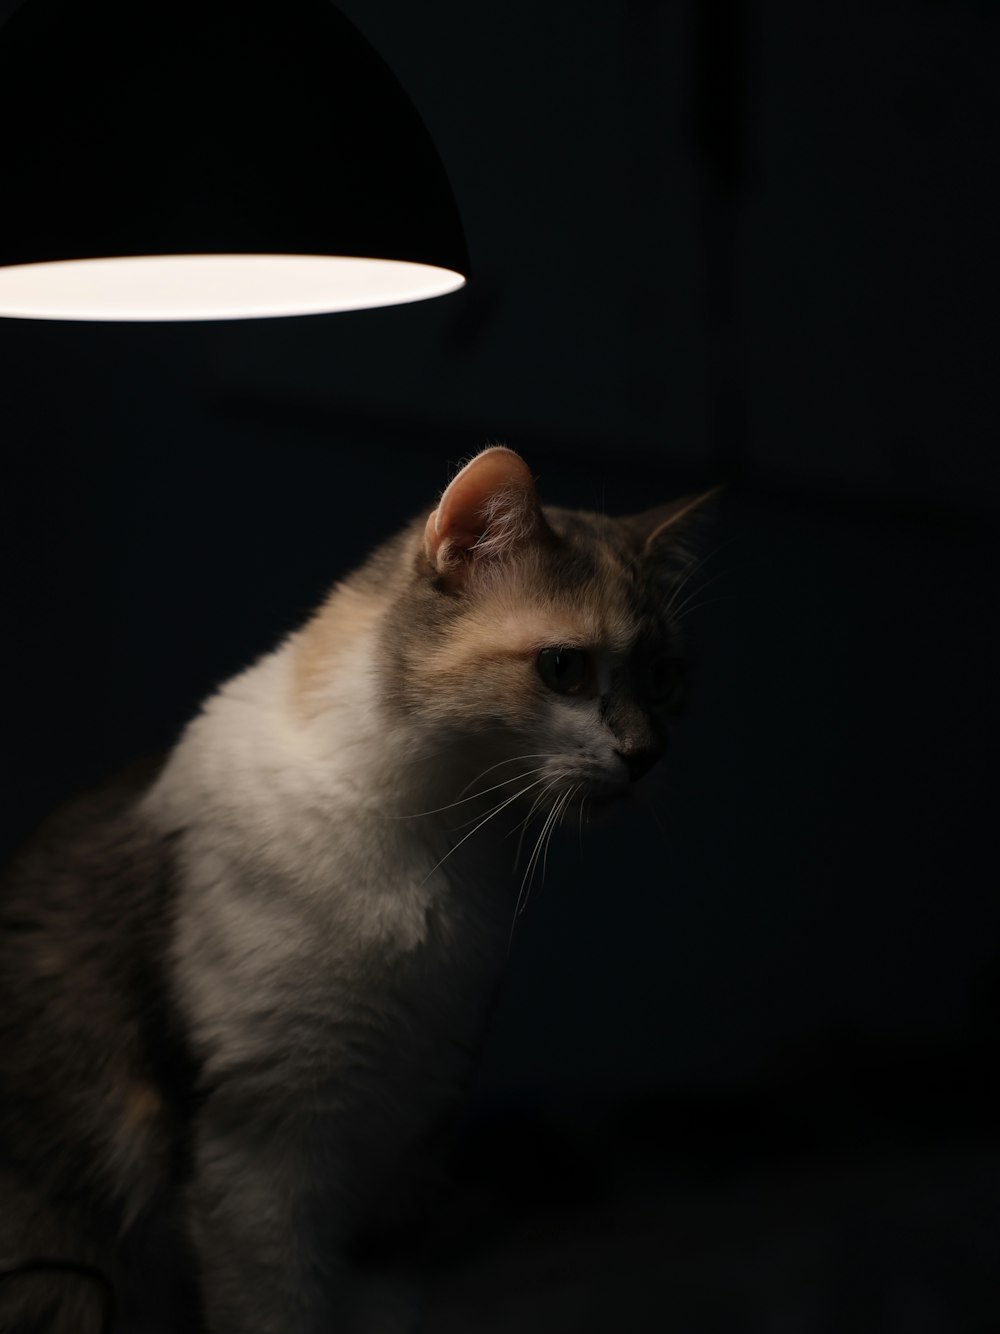 a cat sitting under a lamp in the dark